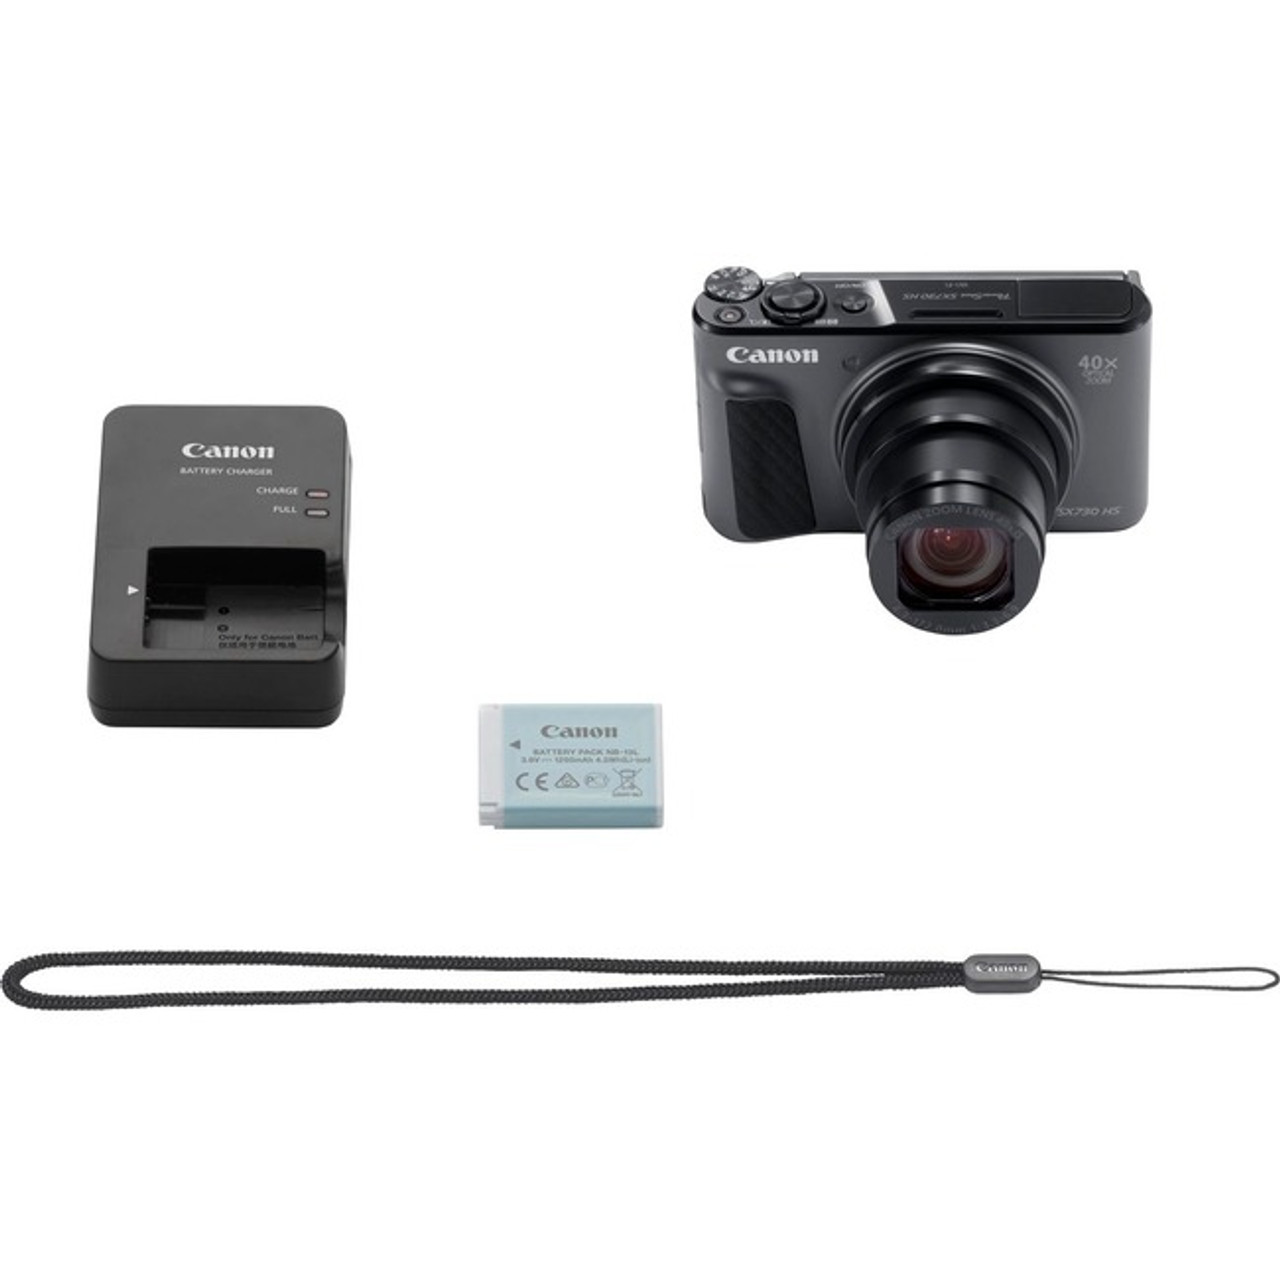 Canon PowerShot SX730 HS 20.3 Megapixel Compact Camera - Black - 1791C001